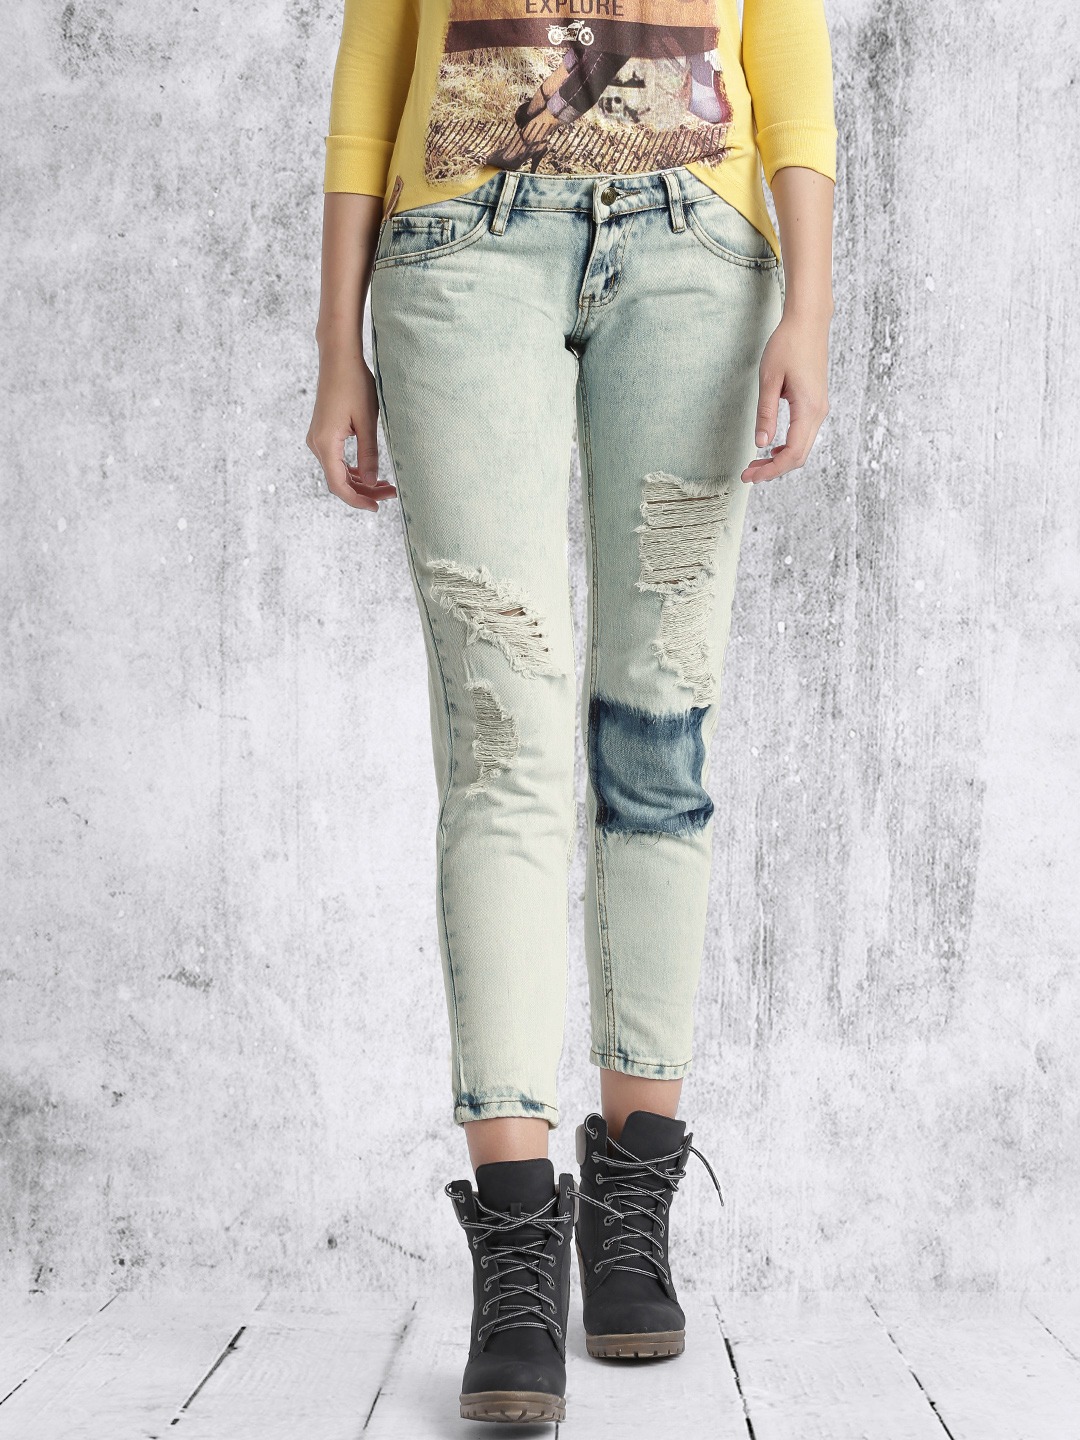 Roadster Denim Jeans Women - Buy Roadster Denim Jeans Women online in India